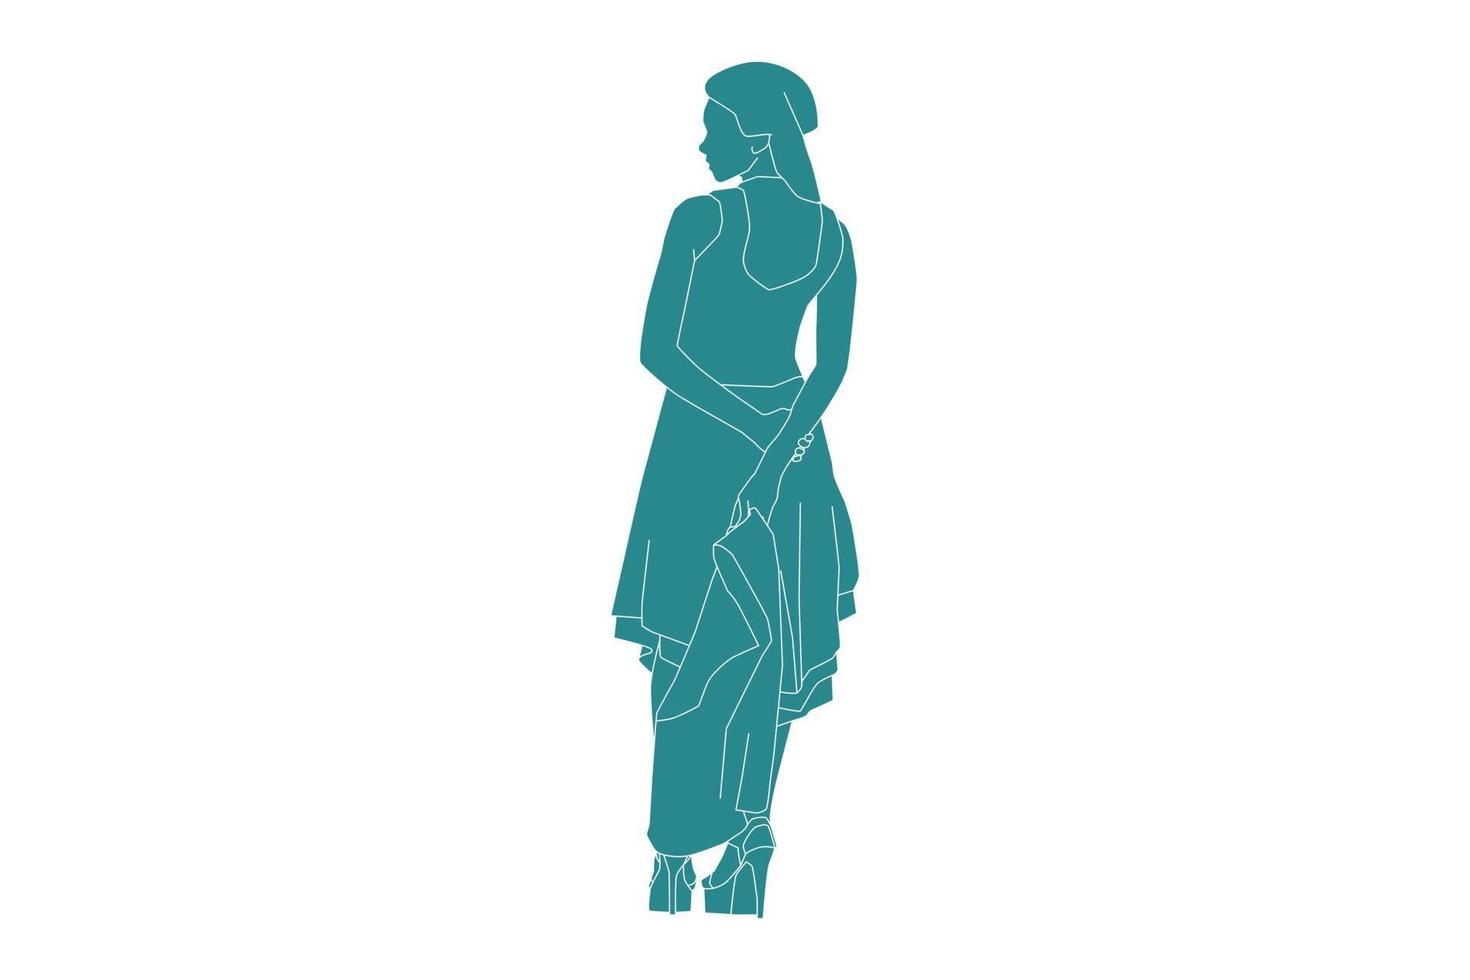 vectorillustratie van modieuze vrouw poseren ziet er van achteren uit, vlakke stijl met omtrek vector